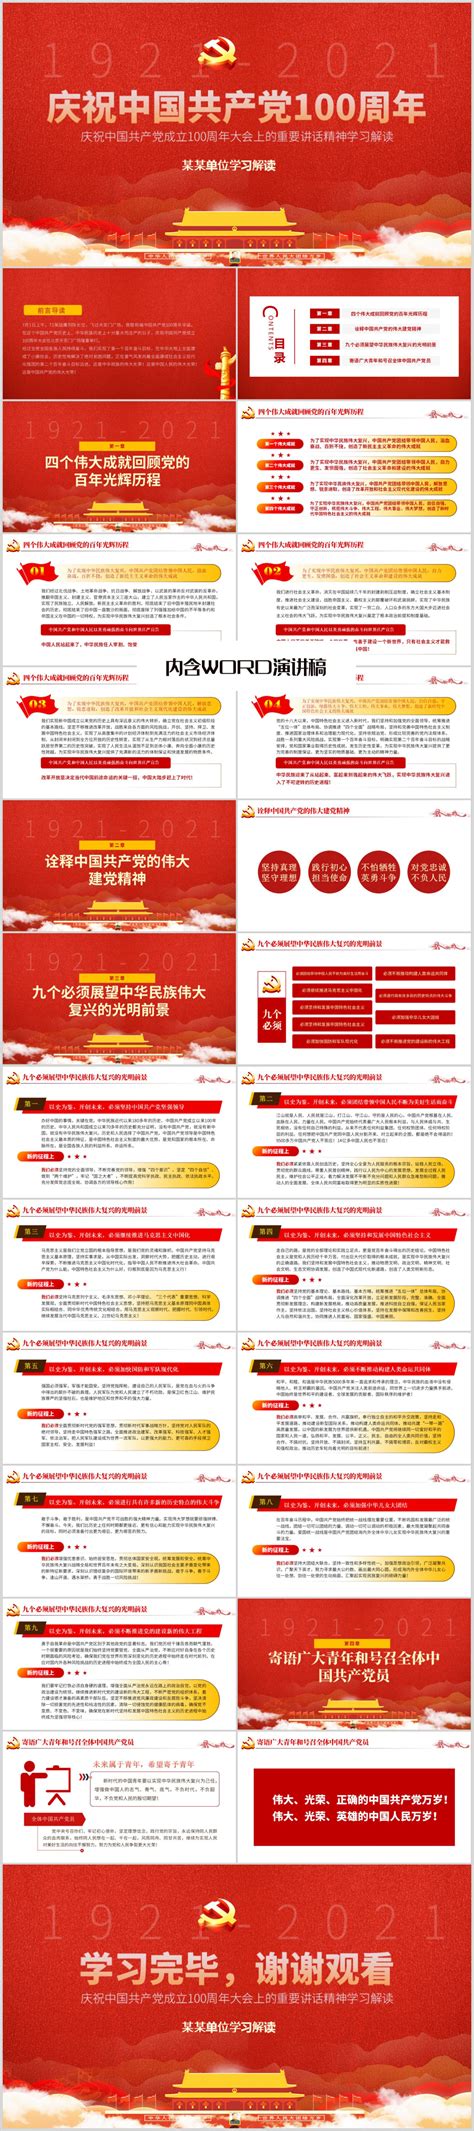 建党一百周年创意海报图片_建党一百周年创意海报设计素材_红动中国